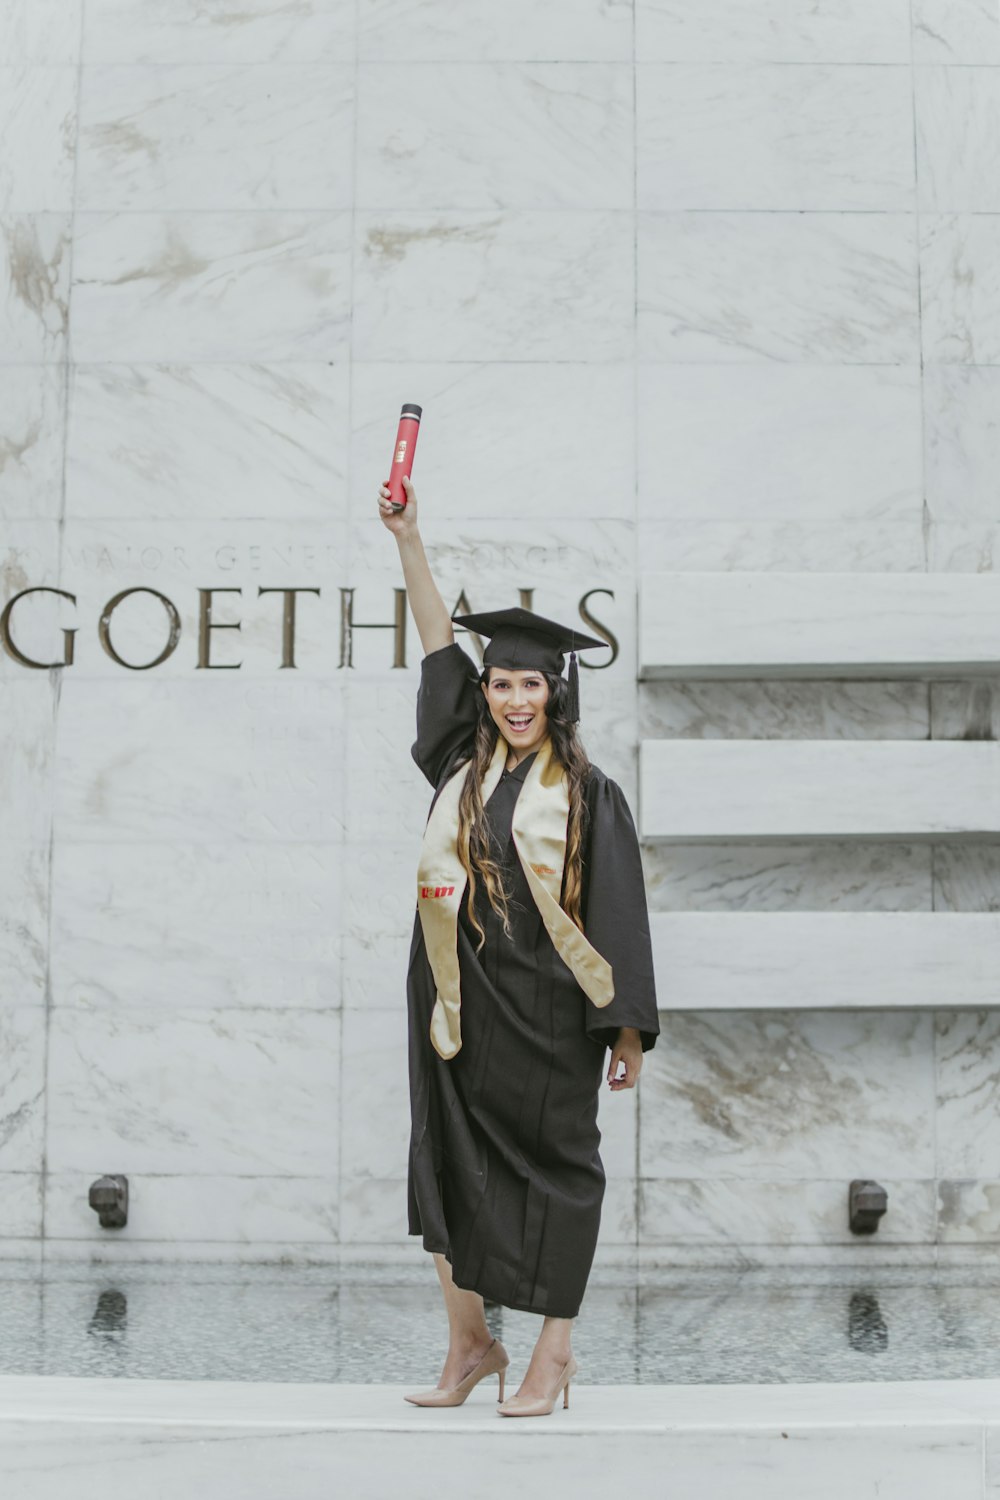 mulher sorridente em pé e vestindo argamassa e vestido acadêmico levantando o braço direito com diploma vermelho